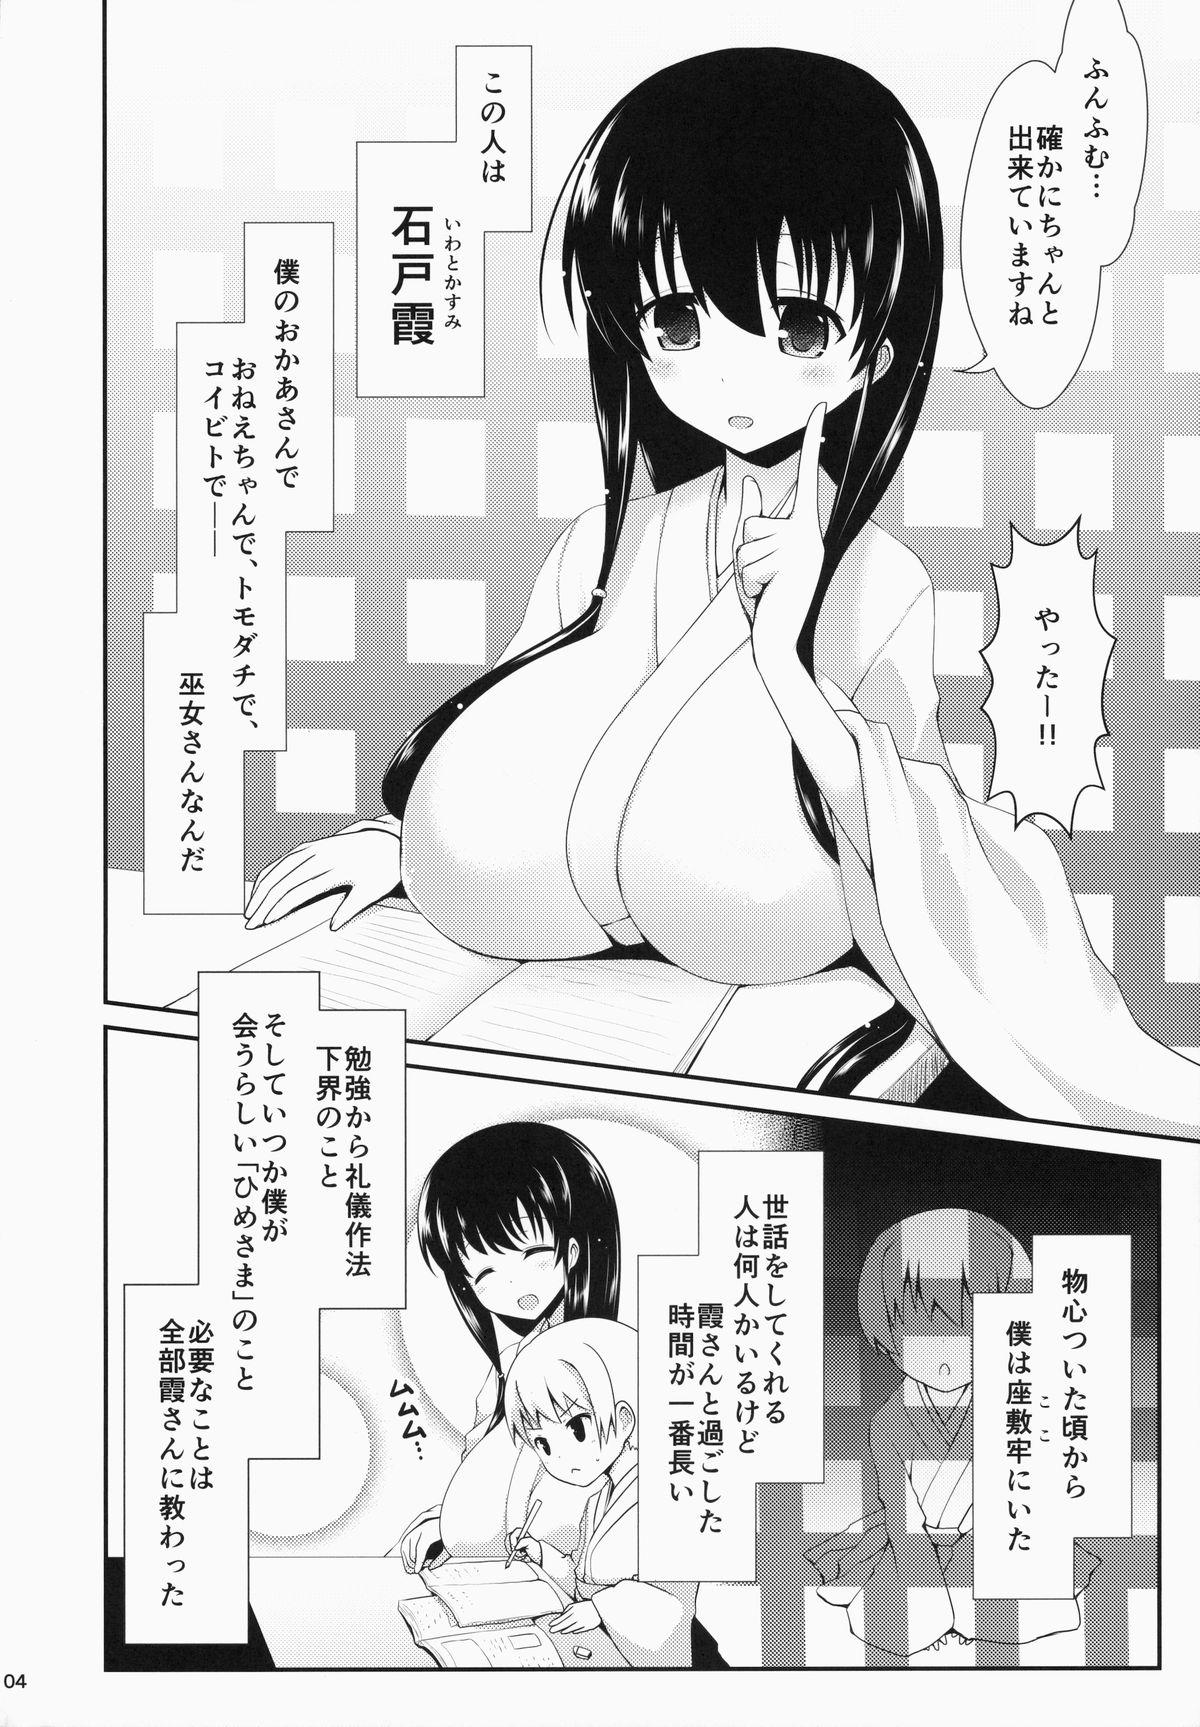 Morrita Eisui no Mori no Mankai no Shita - Saki Workout - Page 4